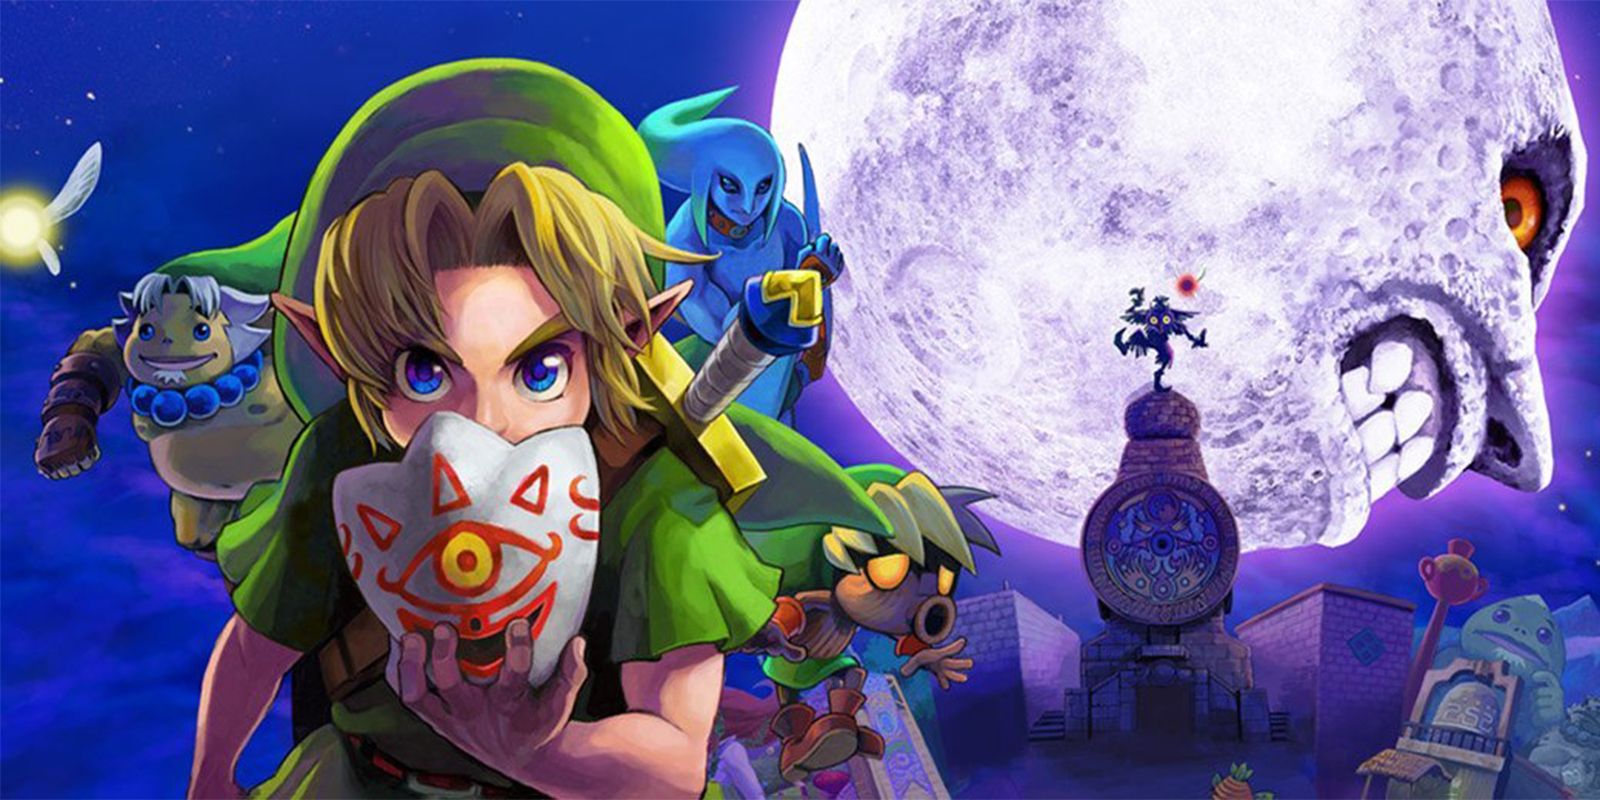 The Legend of Zelda Majora's Mask Poster